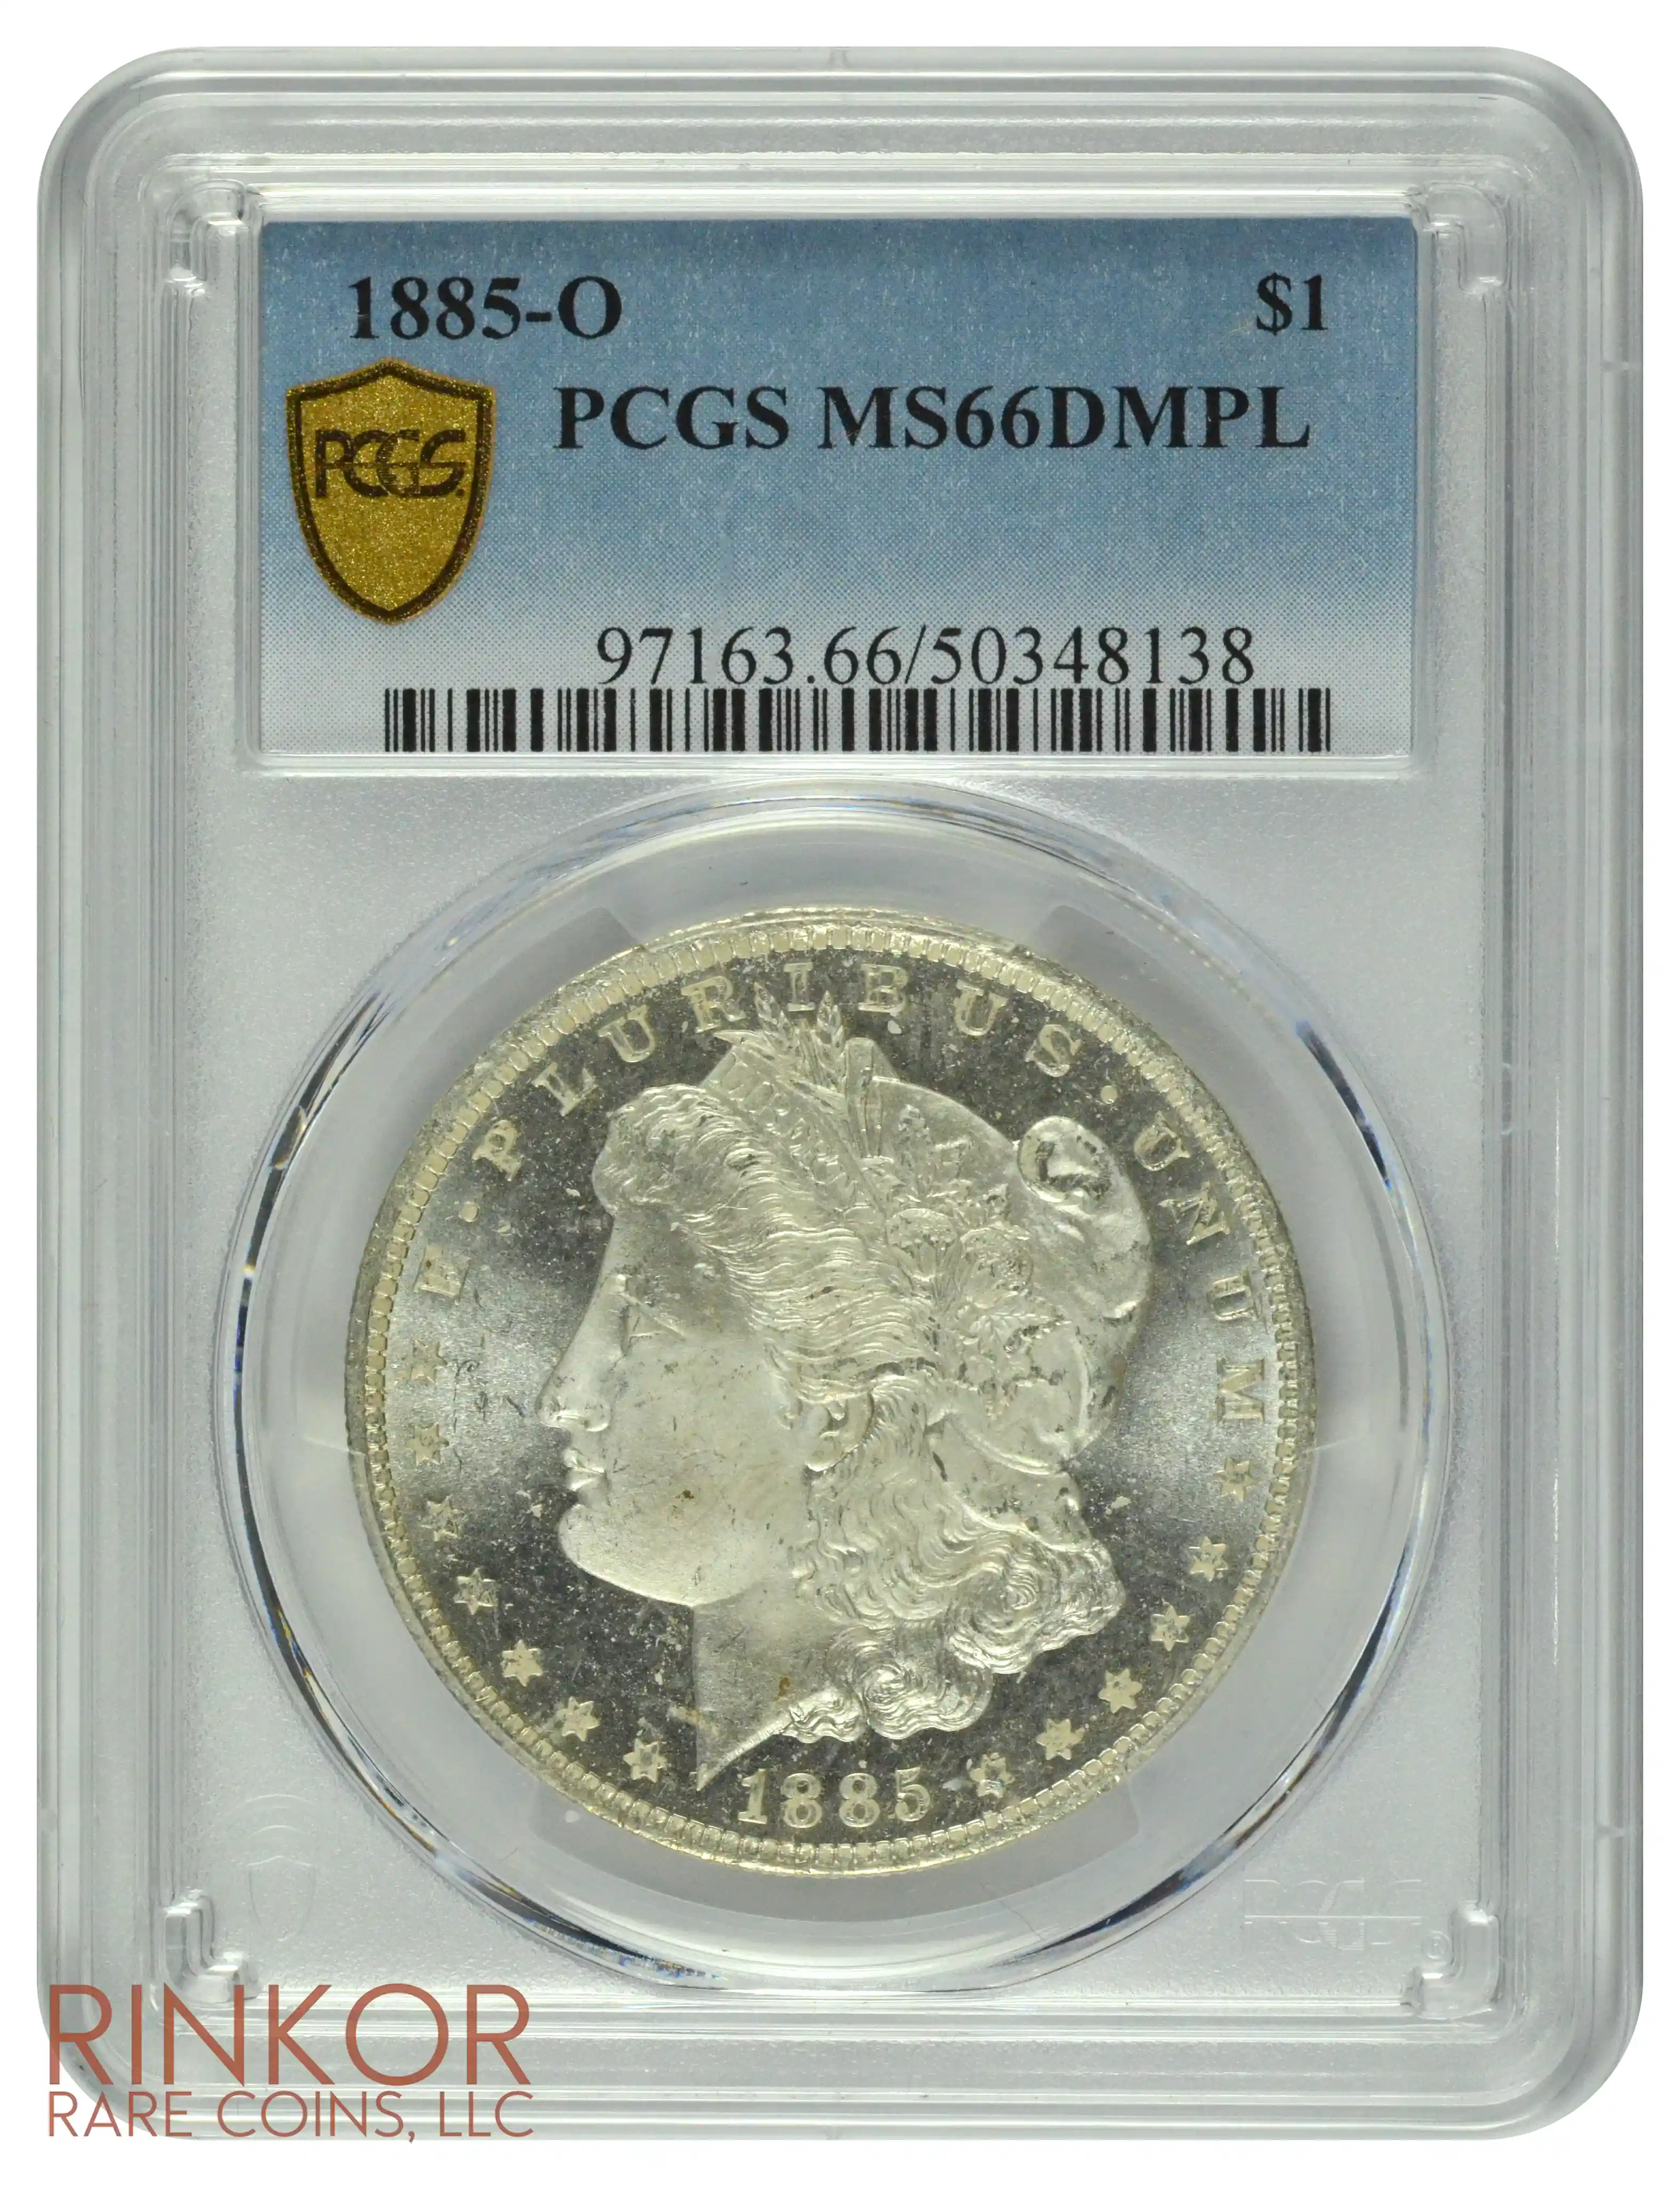 1885-O $1 PCGS MS 66 DMPL